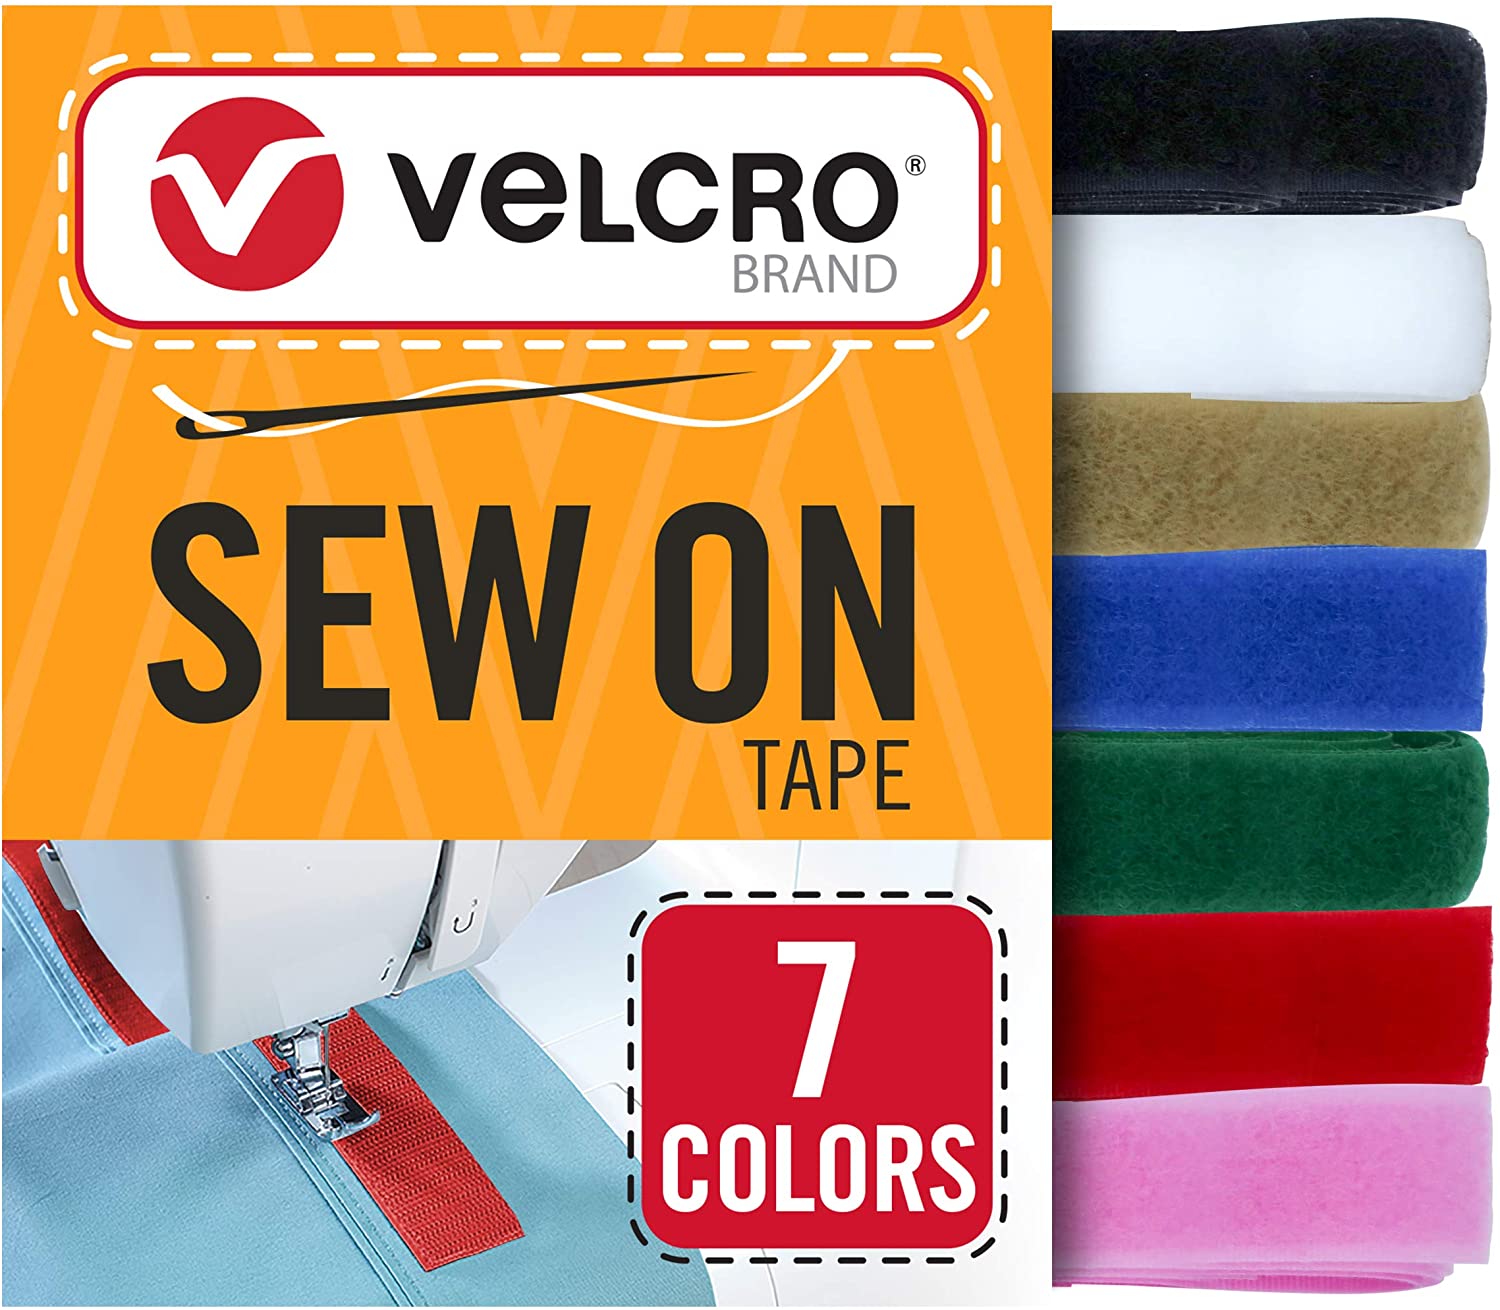 VELCRO Brand Cinta para coser de 4.5 metros x 10 mm, 7 colores para tejidos, ropa y manualidades, su